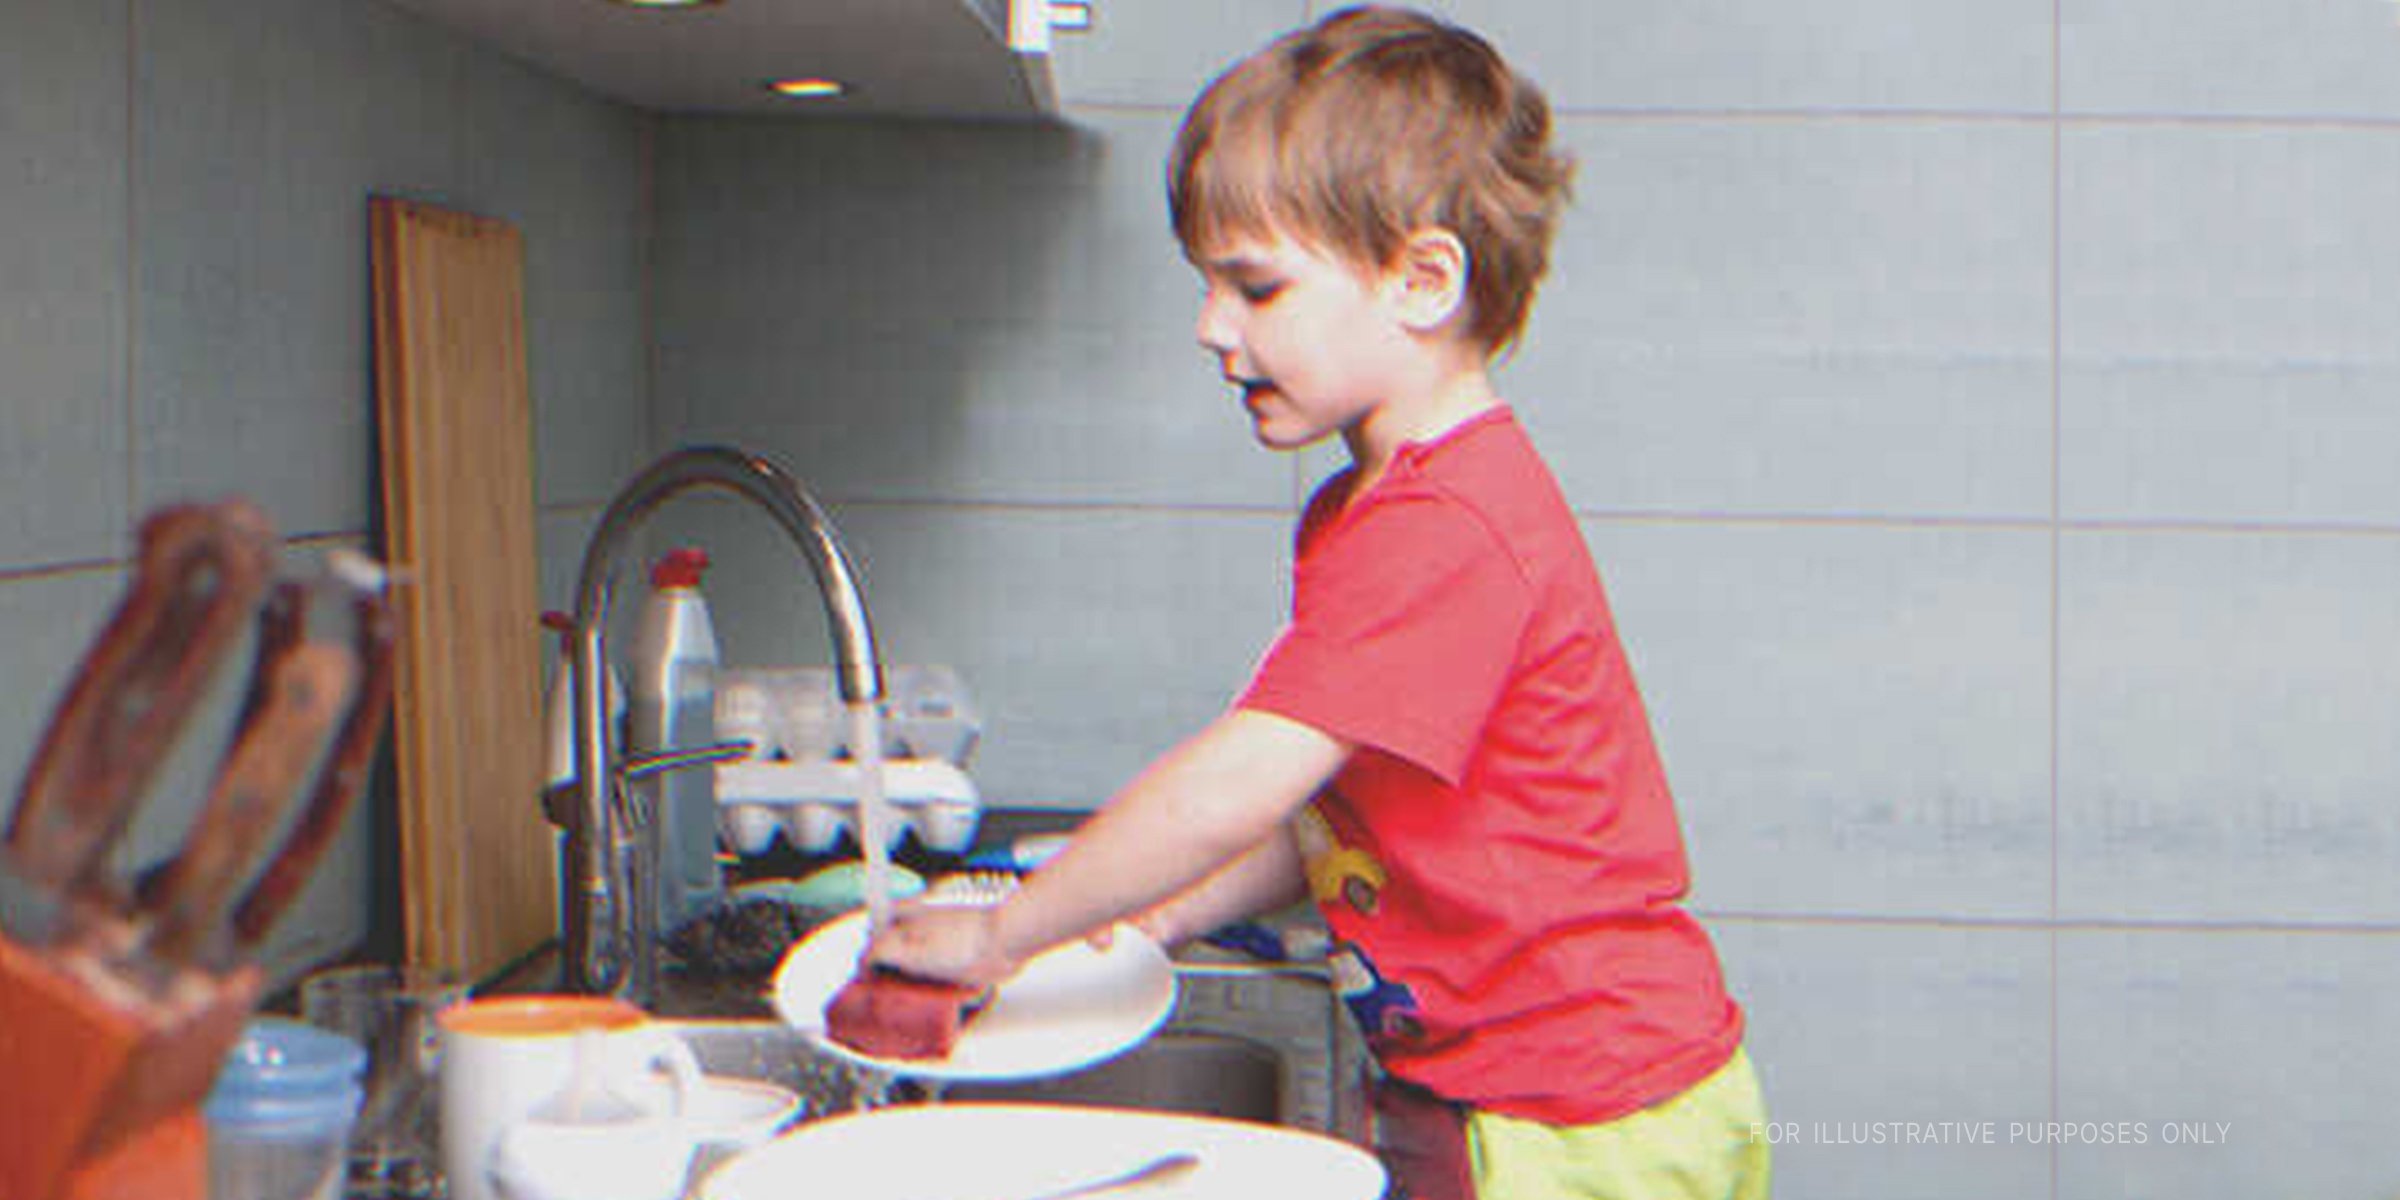 Ein Kind putzt das Geschirr | Quelle: Shutterstock